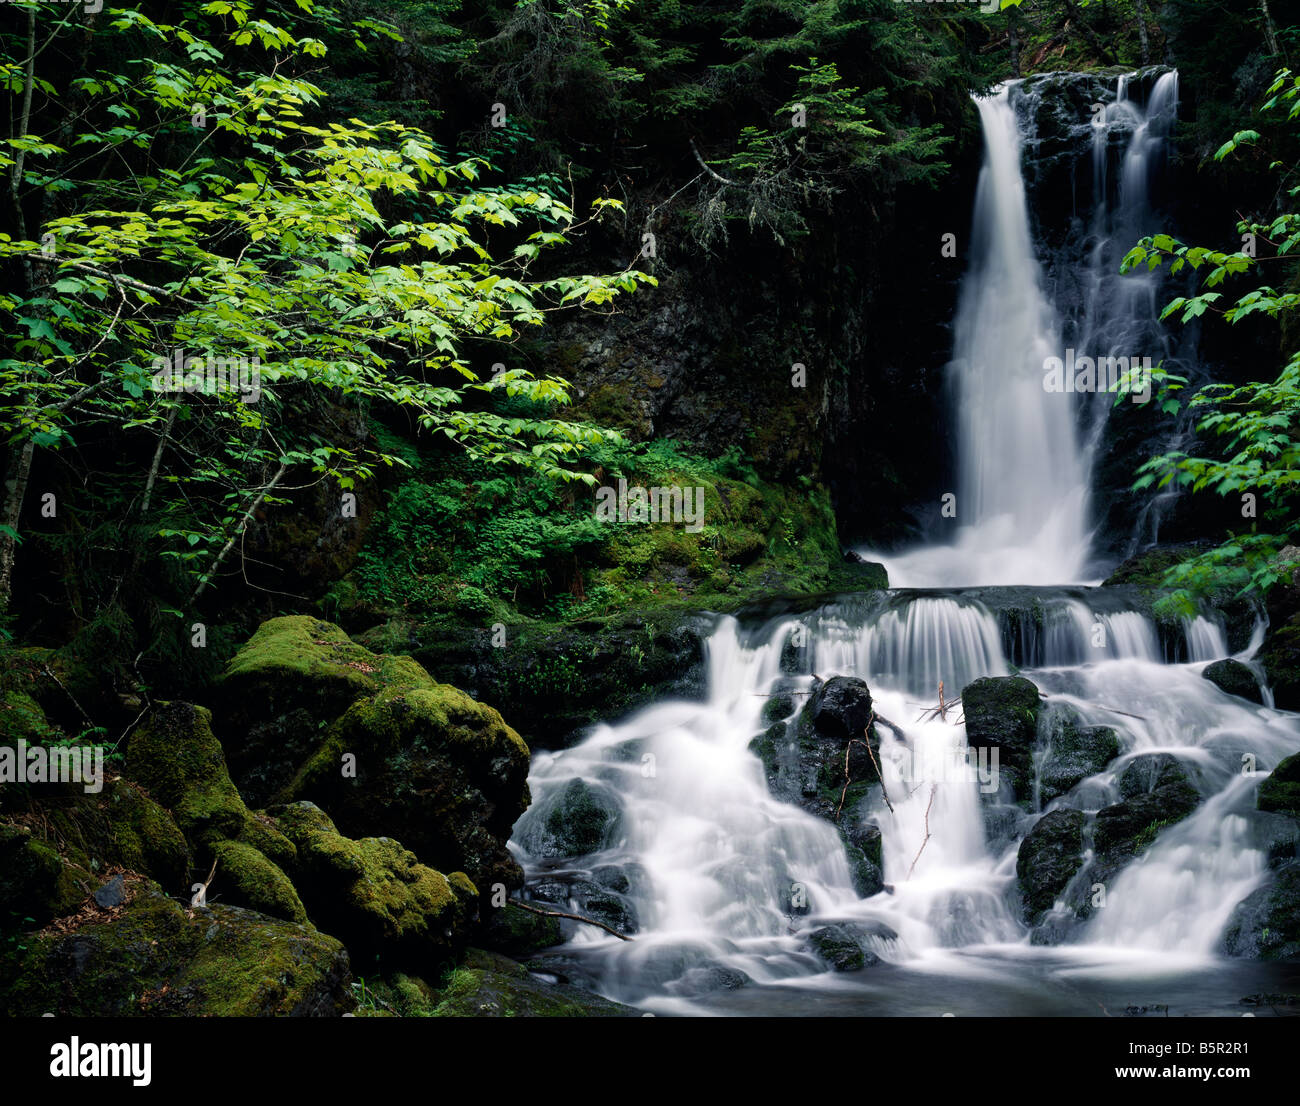 Fotos de Fundy National Park: Ver fotos e Imágenes de Fundy National Park